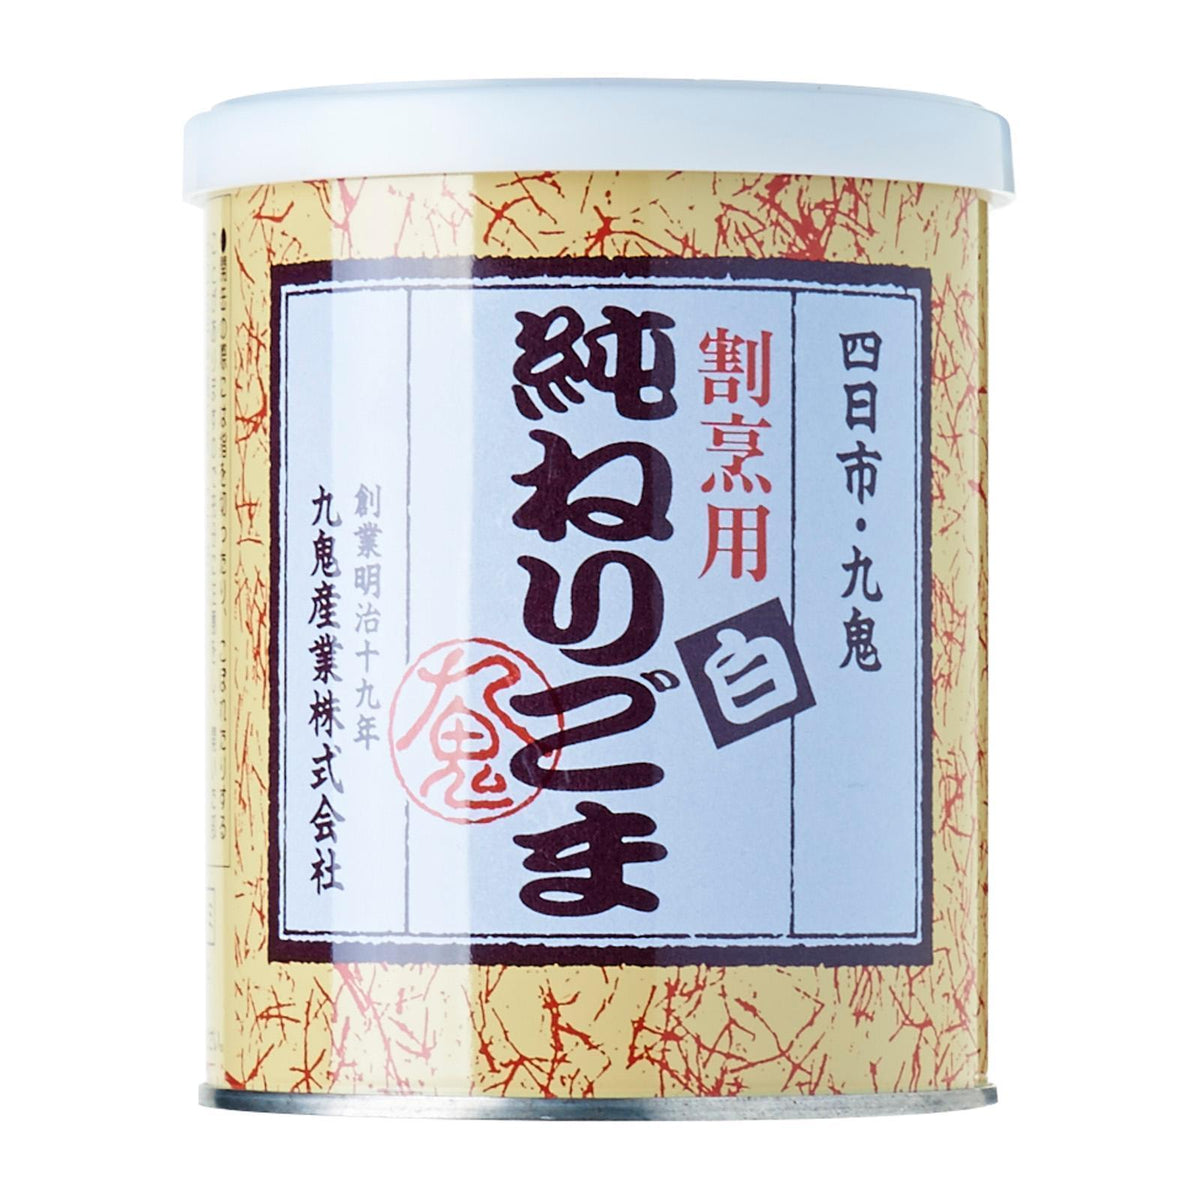 —　あたりごま　白　Goma　Japan　Kuki　Online　Atari　Paste　Shiro　Tin　White　Japanese　300g　Honeydaes　Foods　Grocery